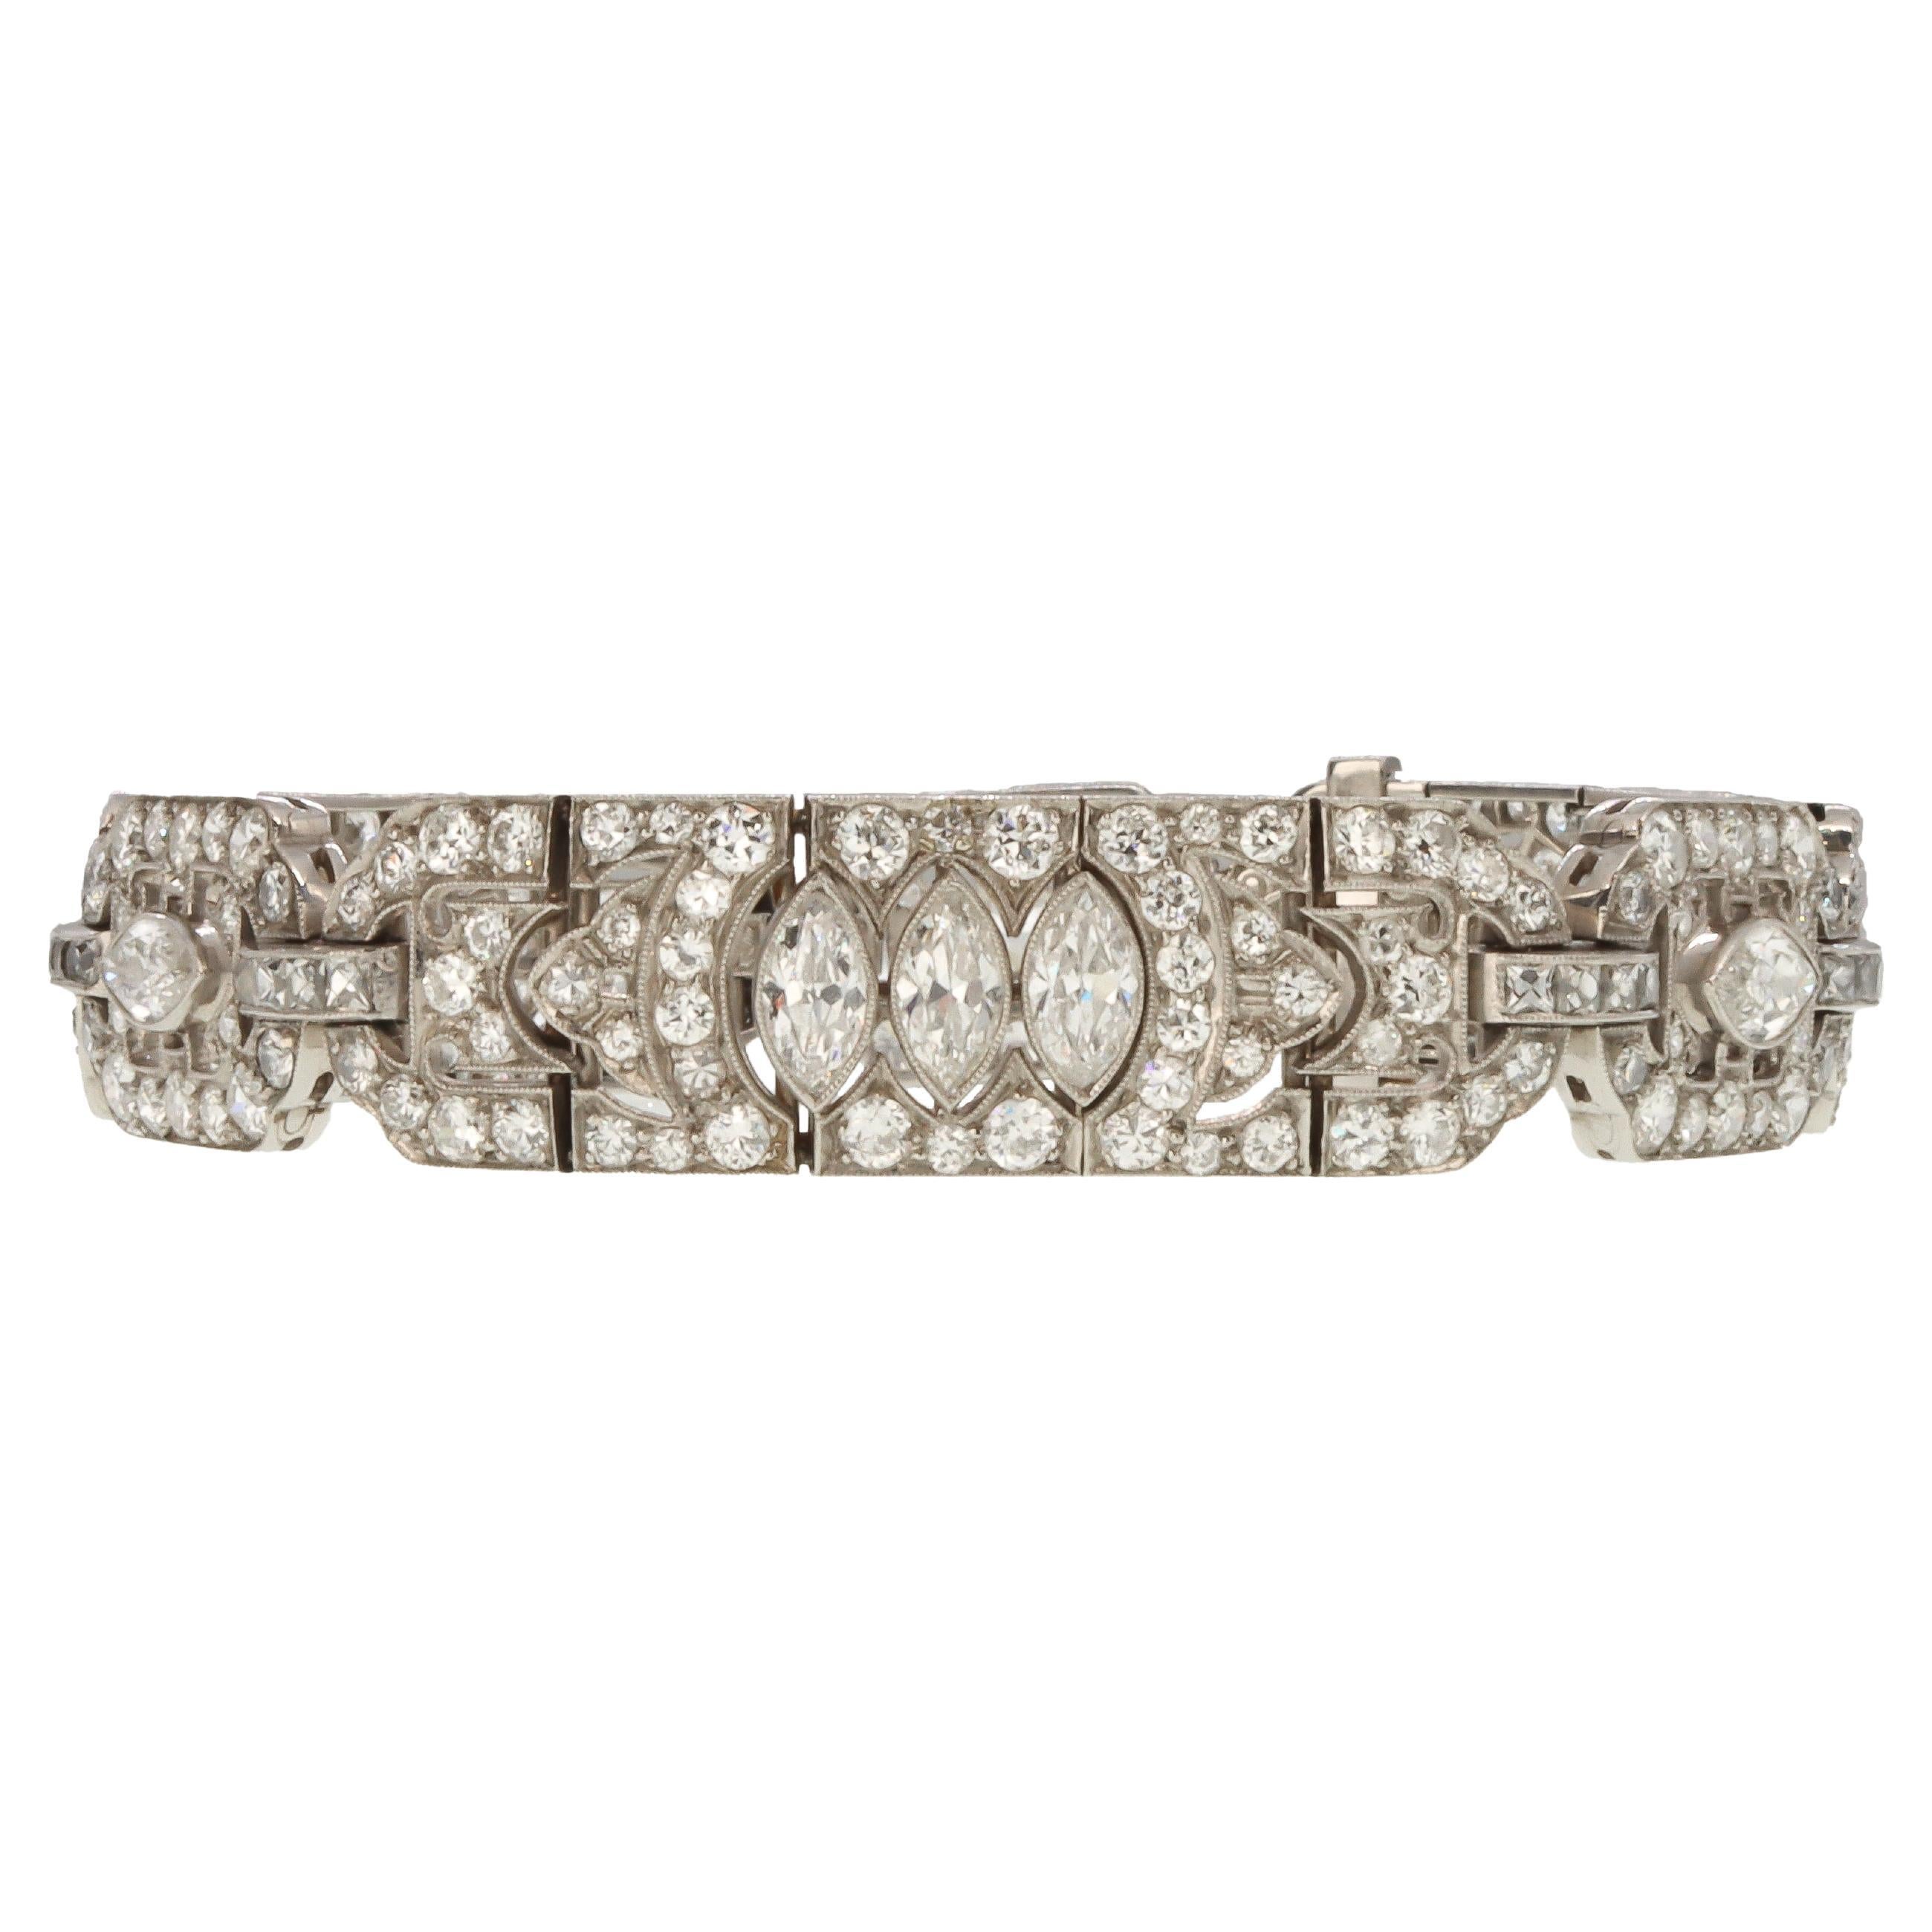 Diese außergewöhnliche Tiffany & Co. Das Art-Déco-Armband aus Diamanten und Platin besteht aus sechs Teilen, die mit zweihundertzweiundfünfzig Diamanten von insgesamt schätzungsweise 9,05 Karat besetzt sind. Die Diamanten bestehen aus zwölf